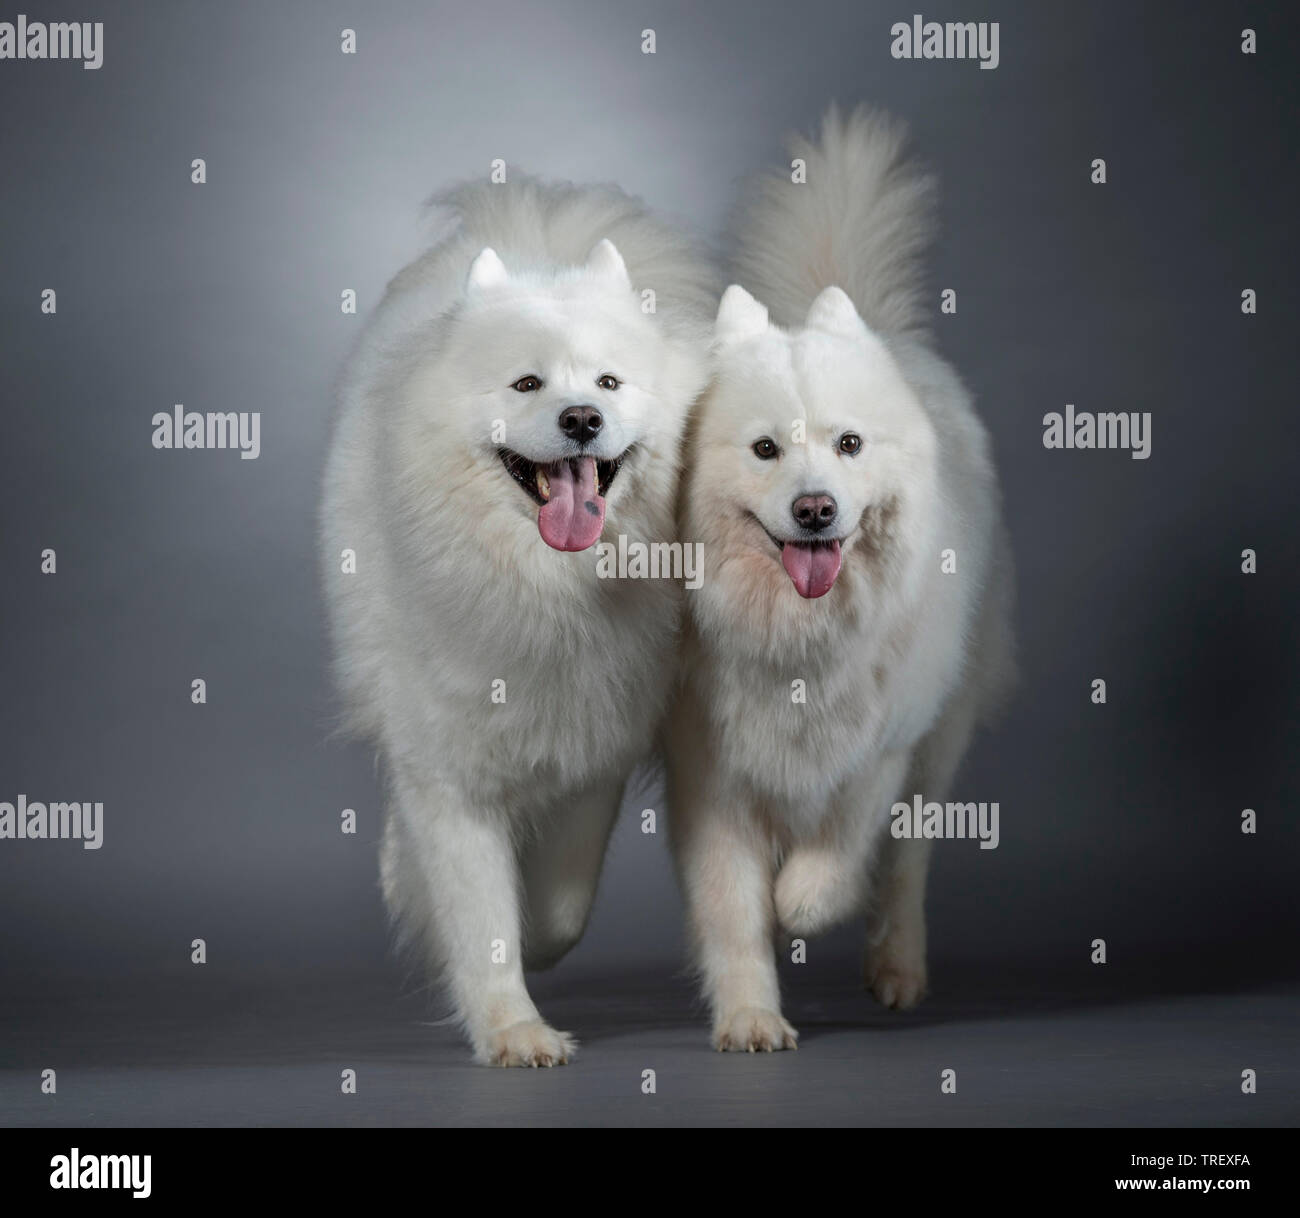 Samoiedo. Due cani adulti in cammino verso la telecamera. Studio Immagine contro uno sfondo grigio. Foto Stock